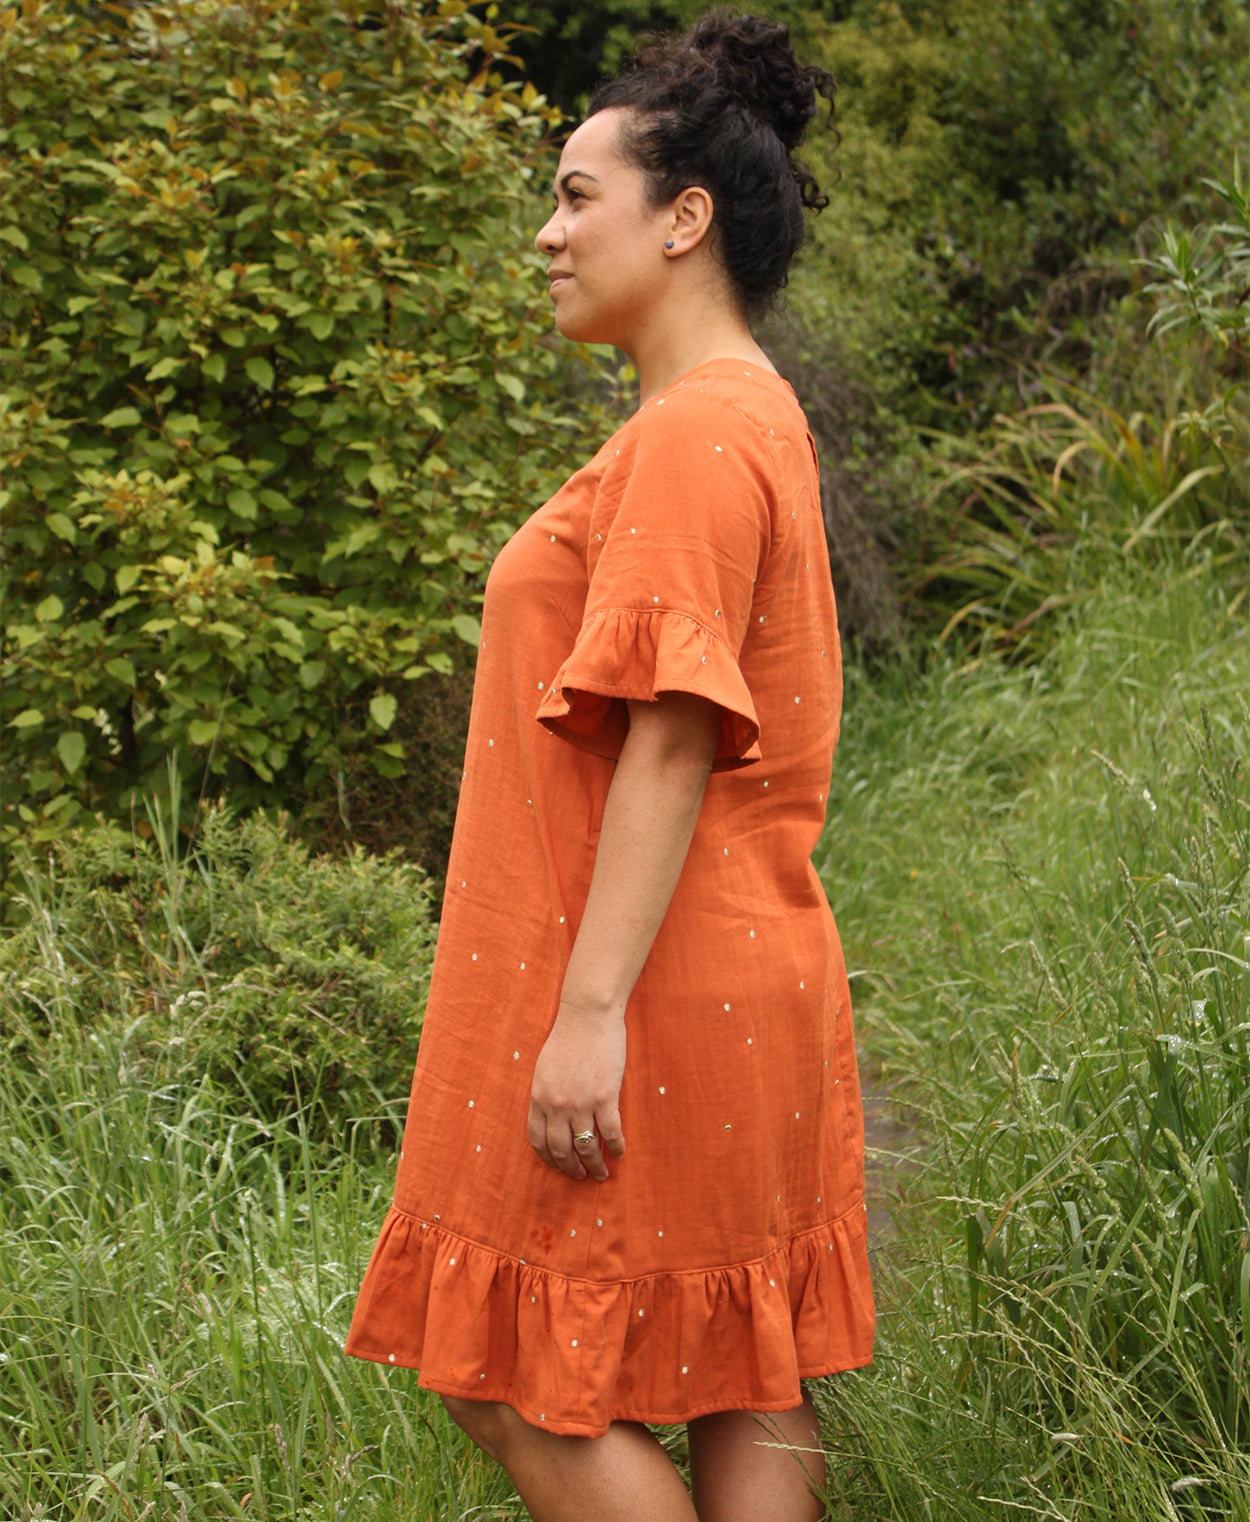 Below the Kōwhai Pōhutukawa Dress